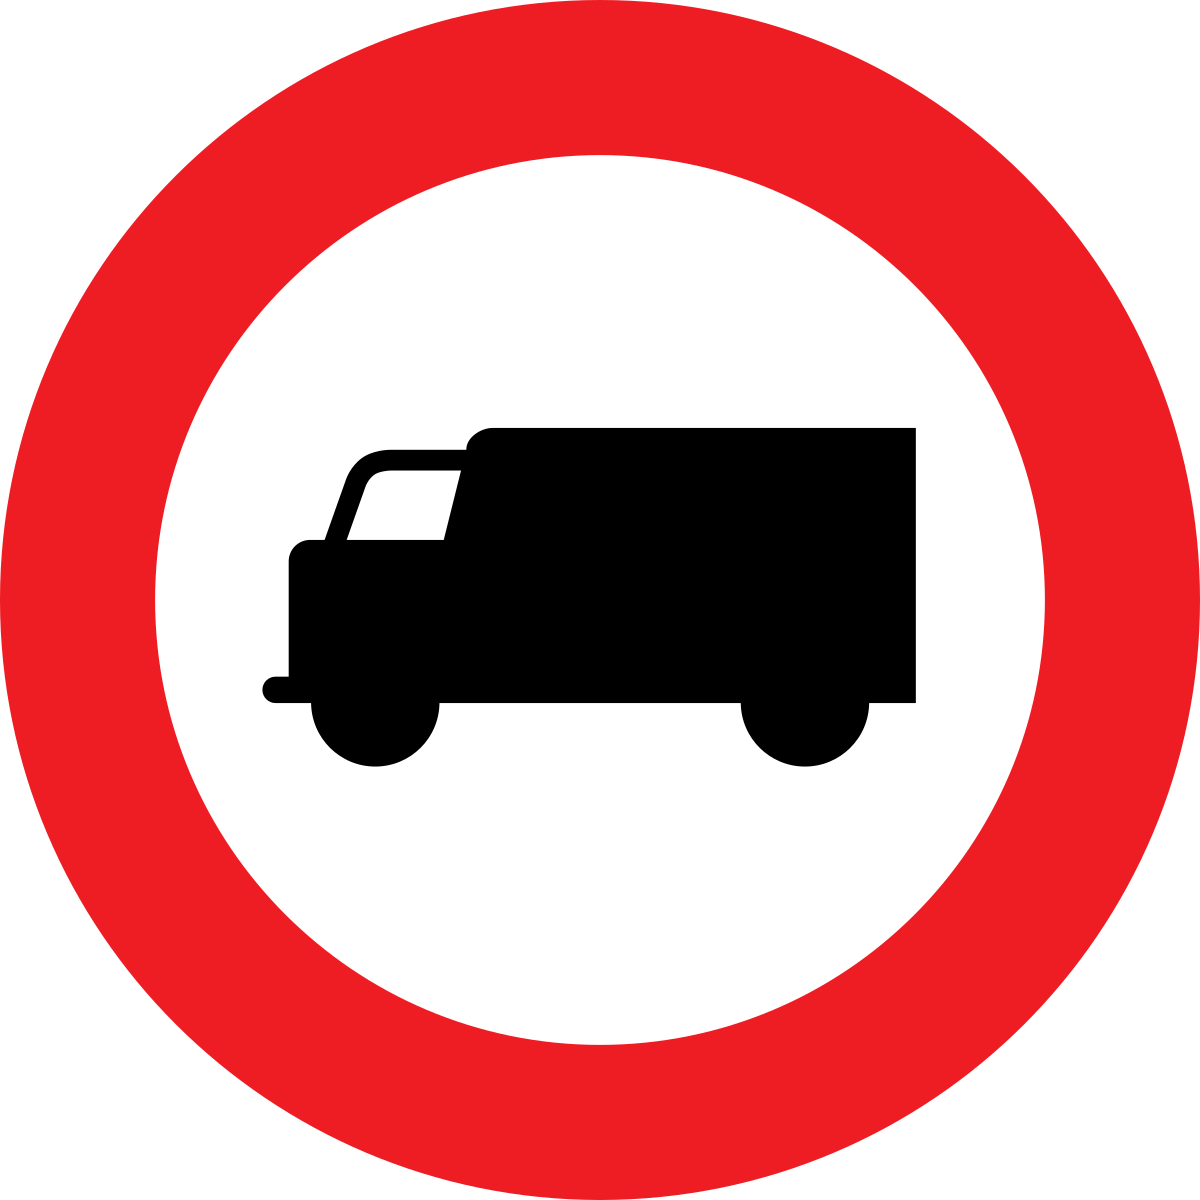 Проезд грузовых автомобилей запрещено. Знаки для грузовых автомобилей. Знак грузовым запрещено. Знак движение грузовых автомобилей запрещено. Грузовым машинам въезд запрещен знак.